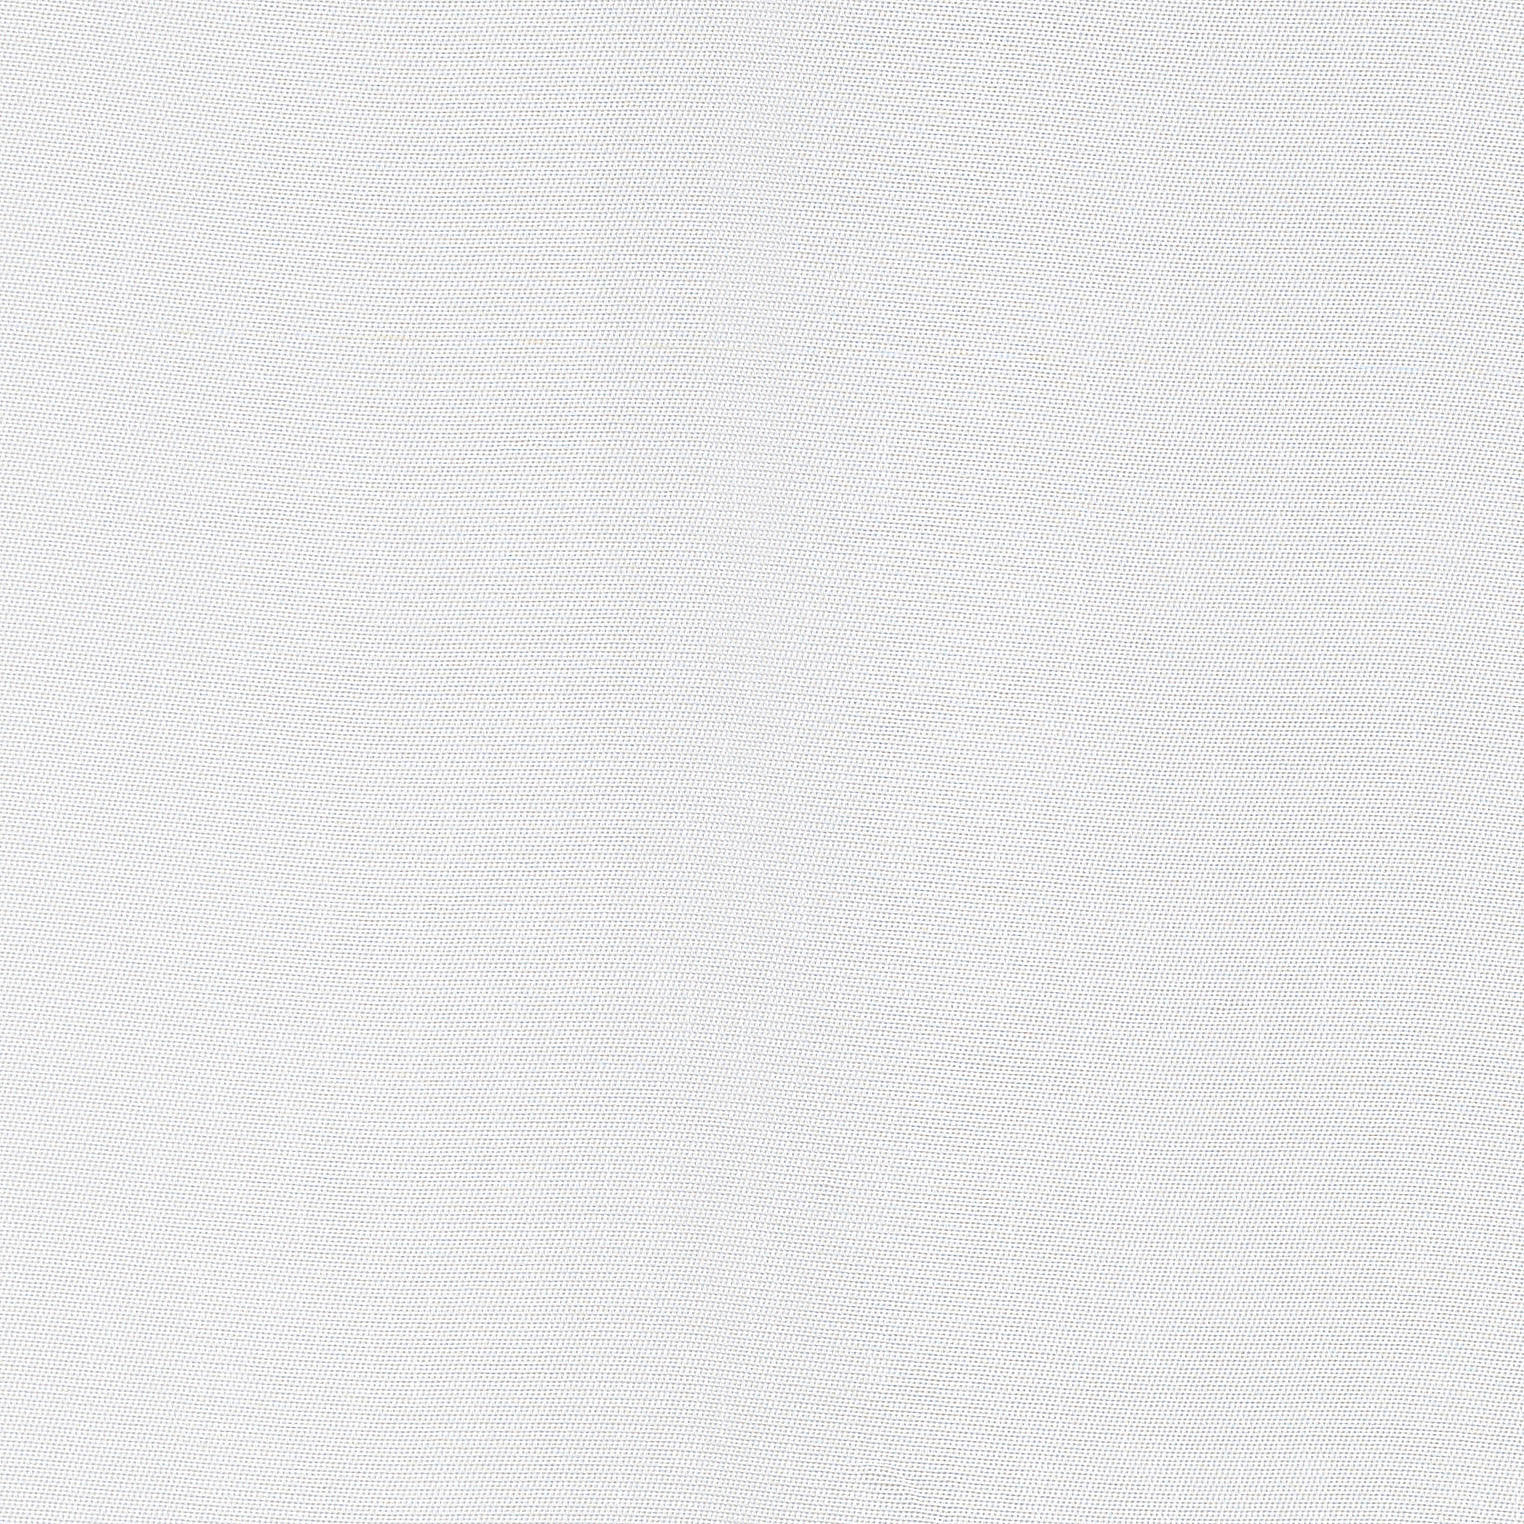 ZÁCLONA, polopriehľadné, 295 cm - biela, Konventionell, textil (295cm) - Esposa